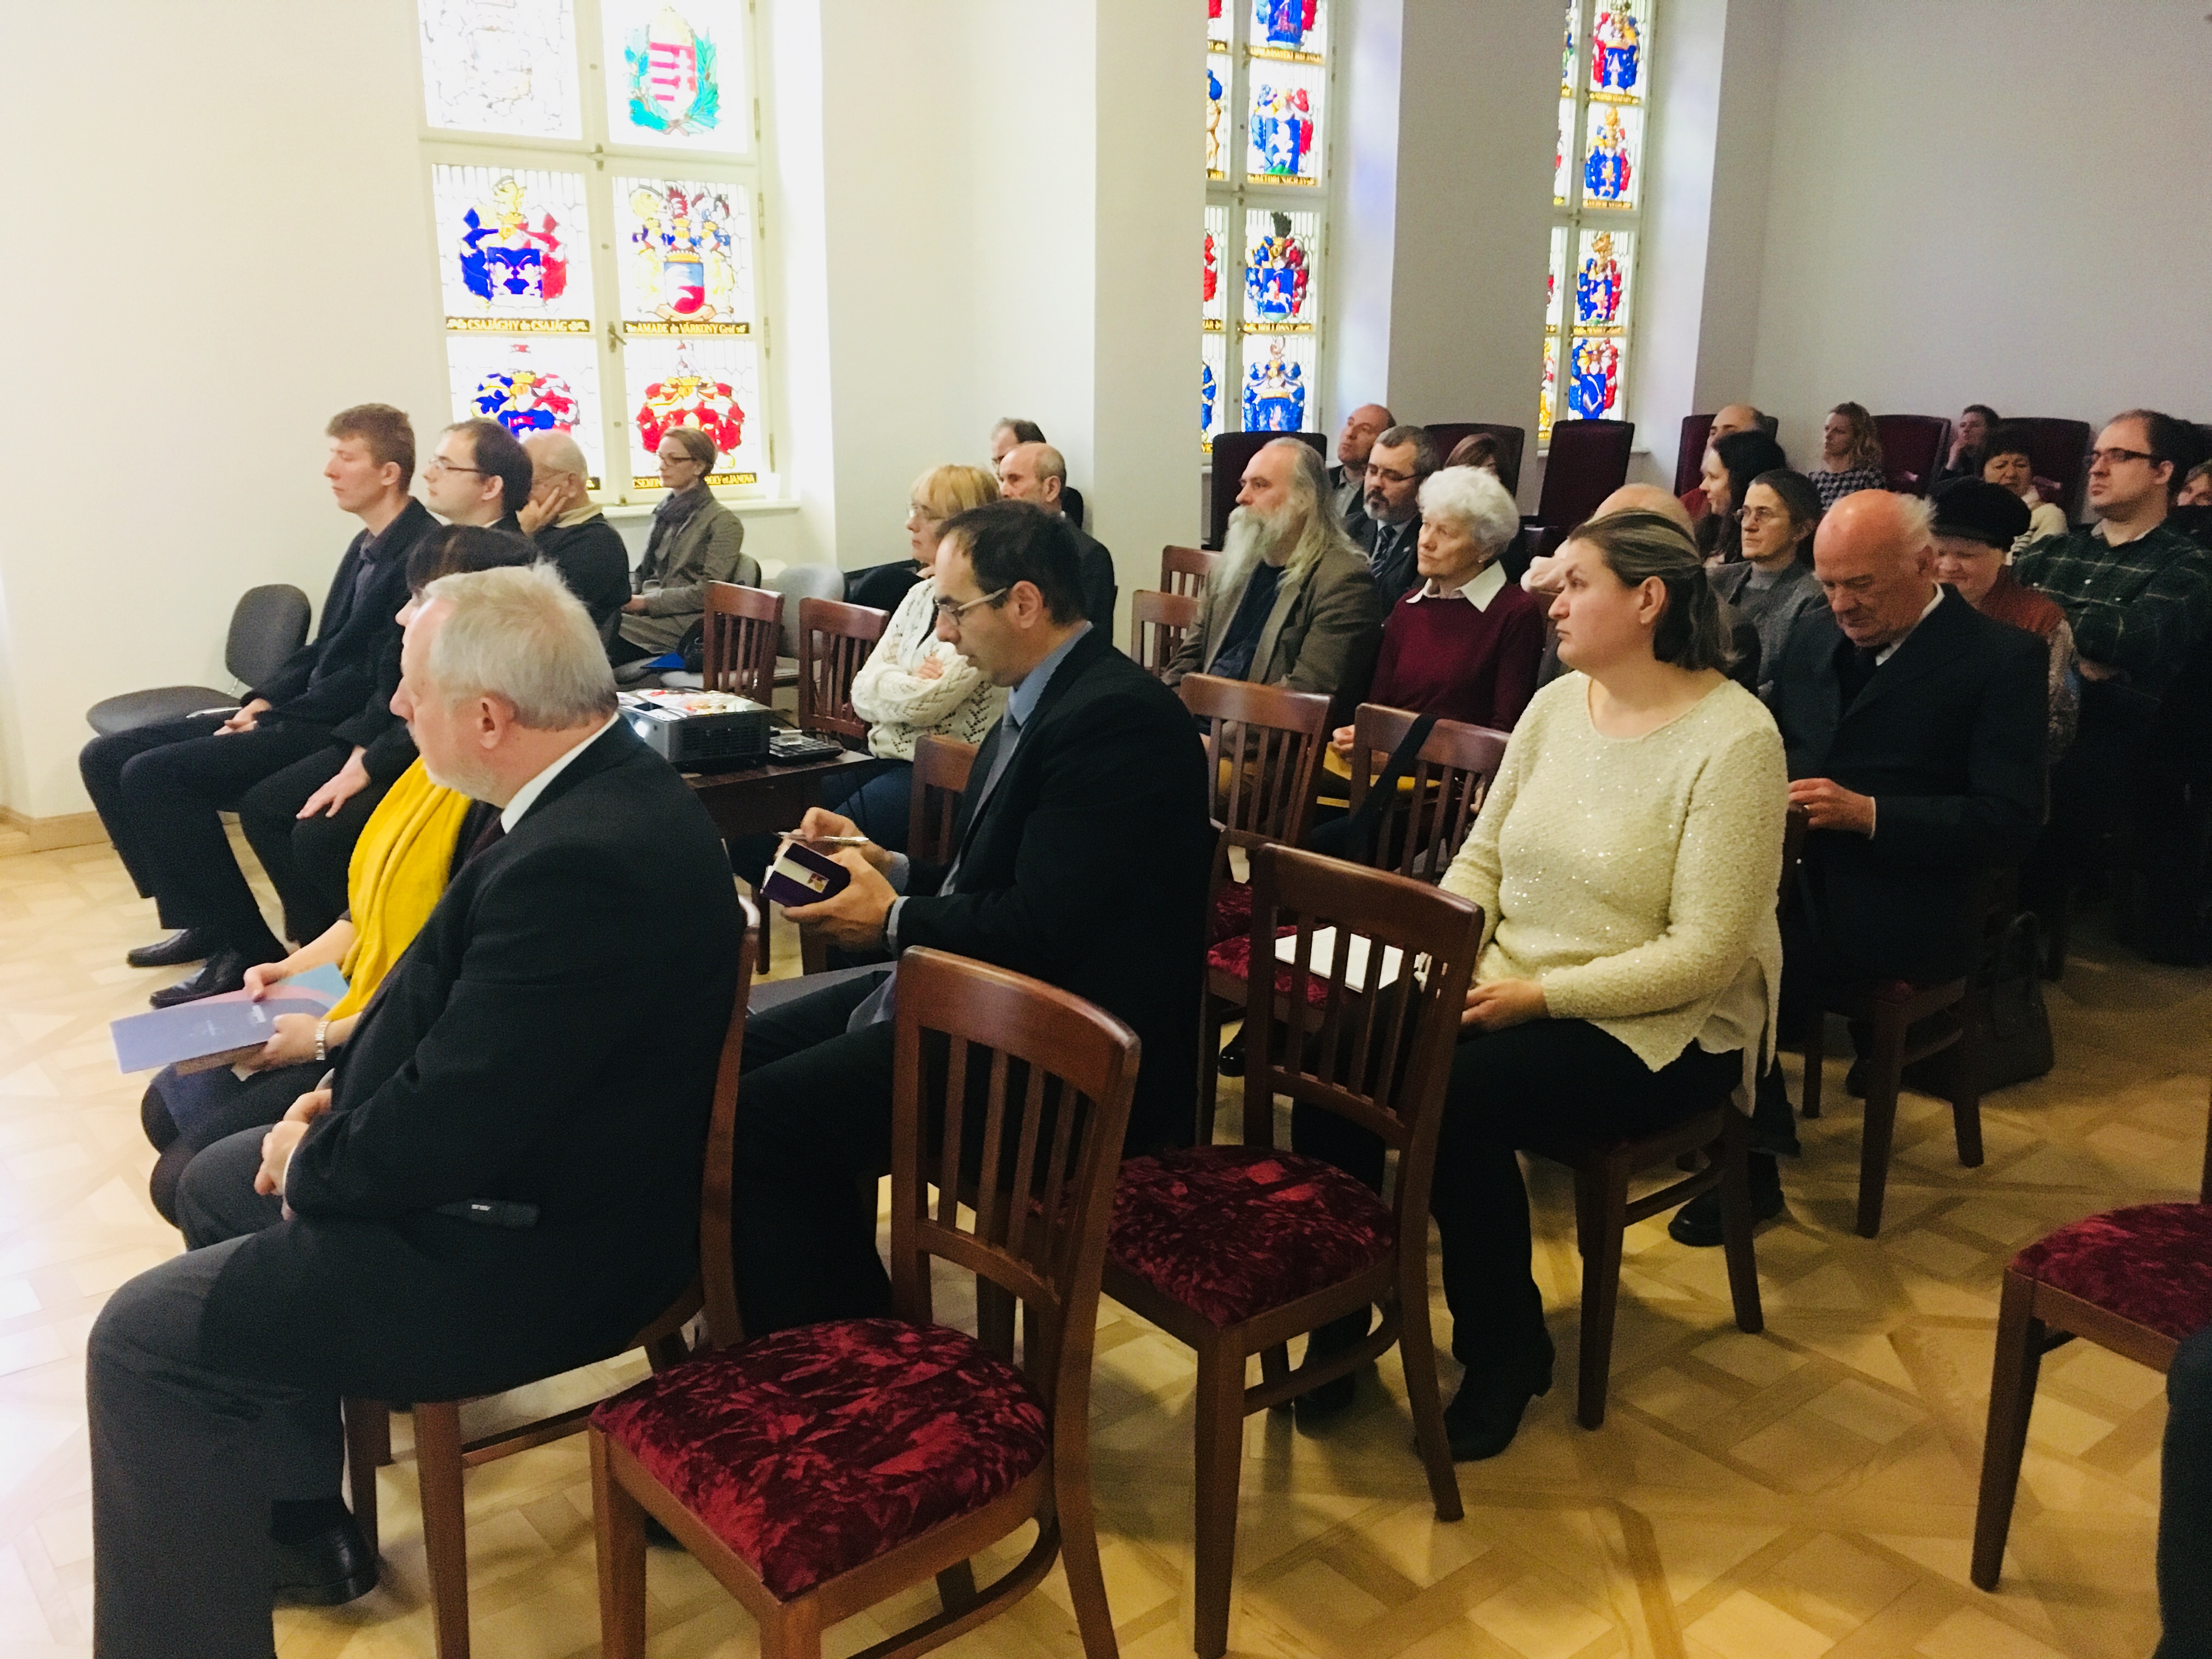 A reformáció és Fejér vármegye - konferencia